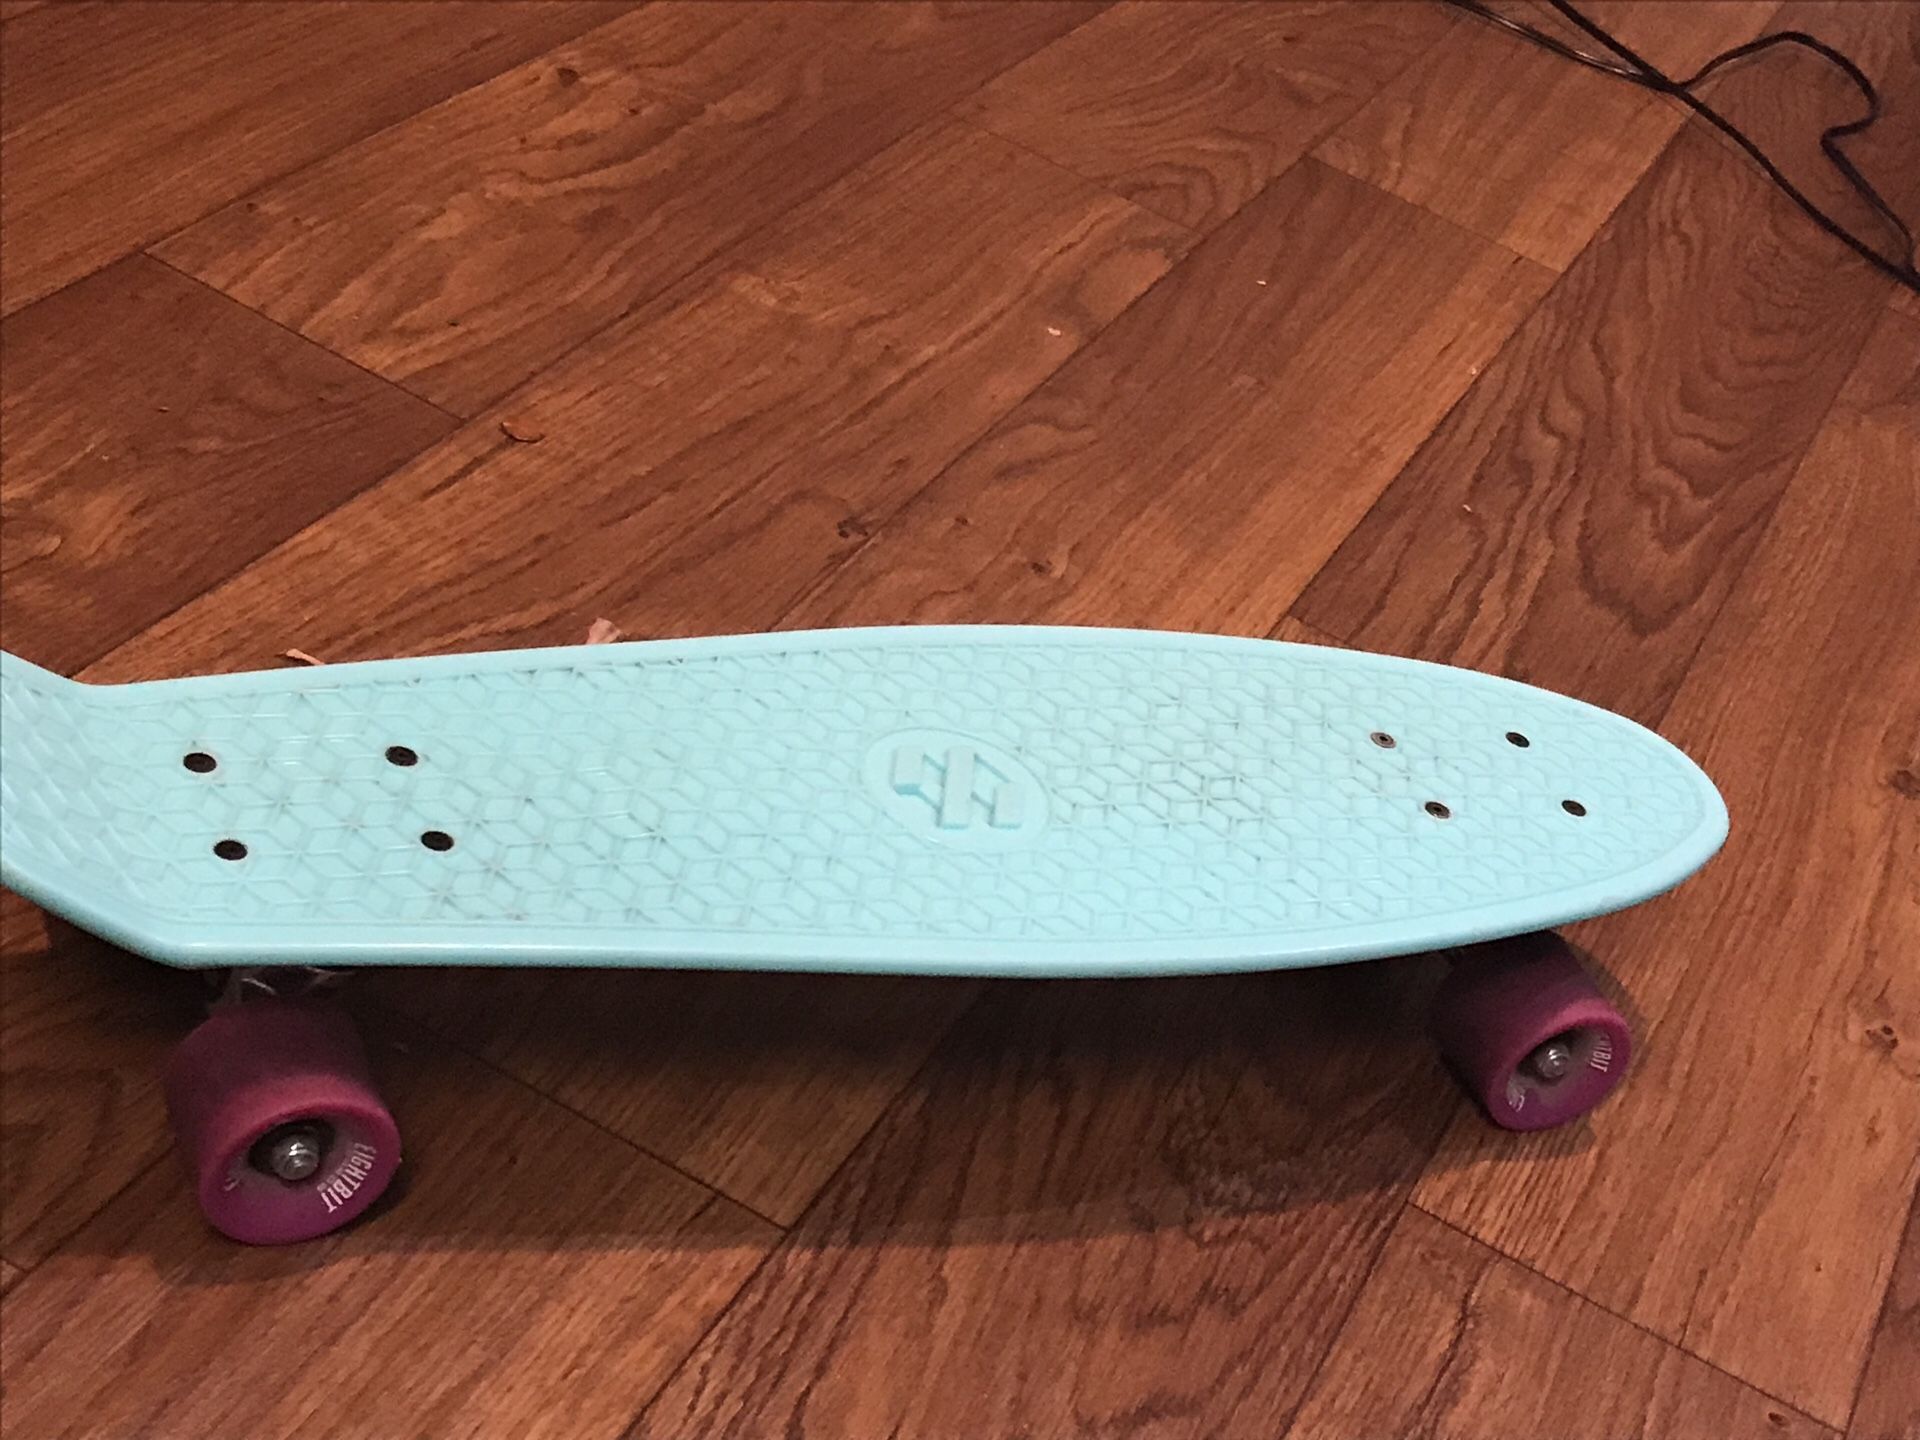 Eightbit Boards Penny board skateboard